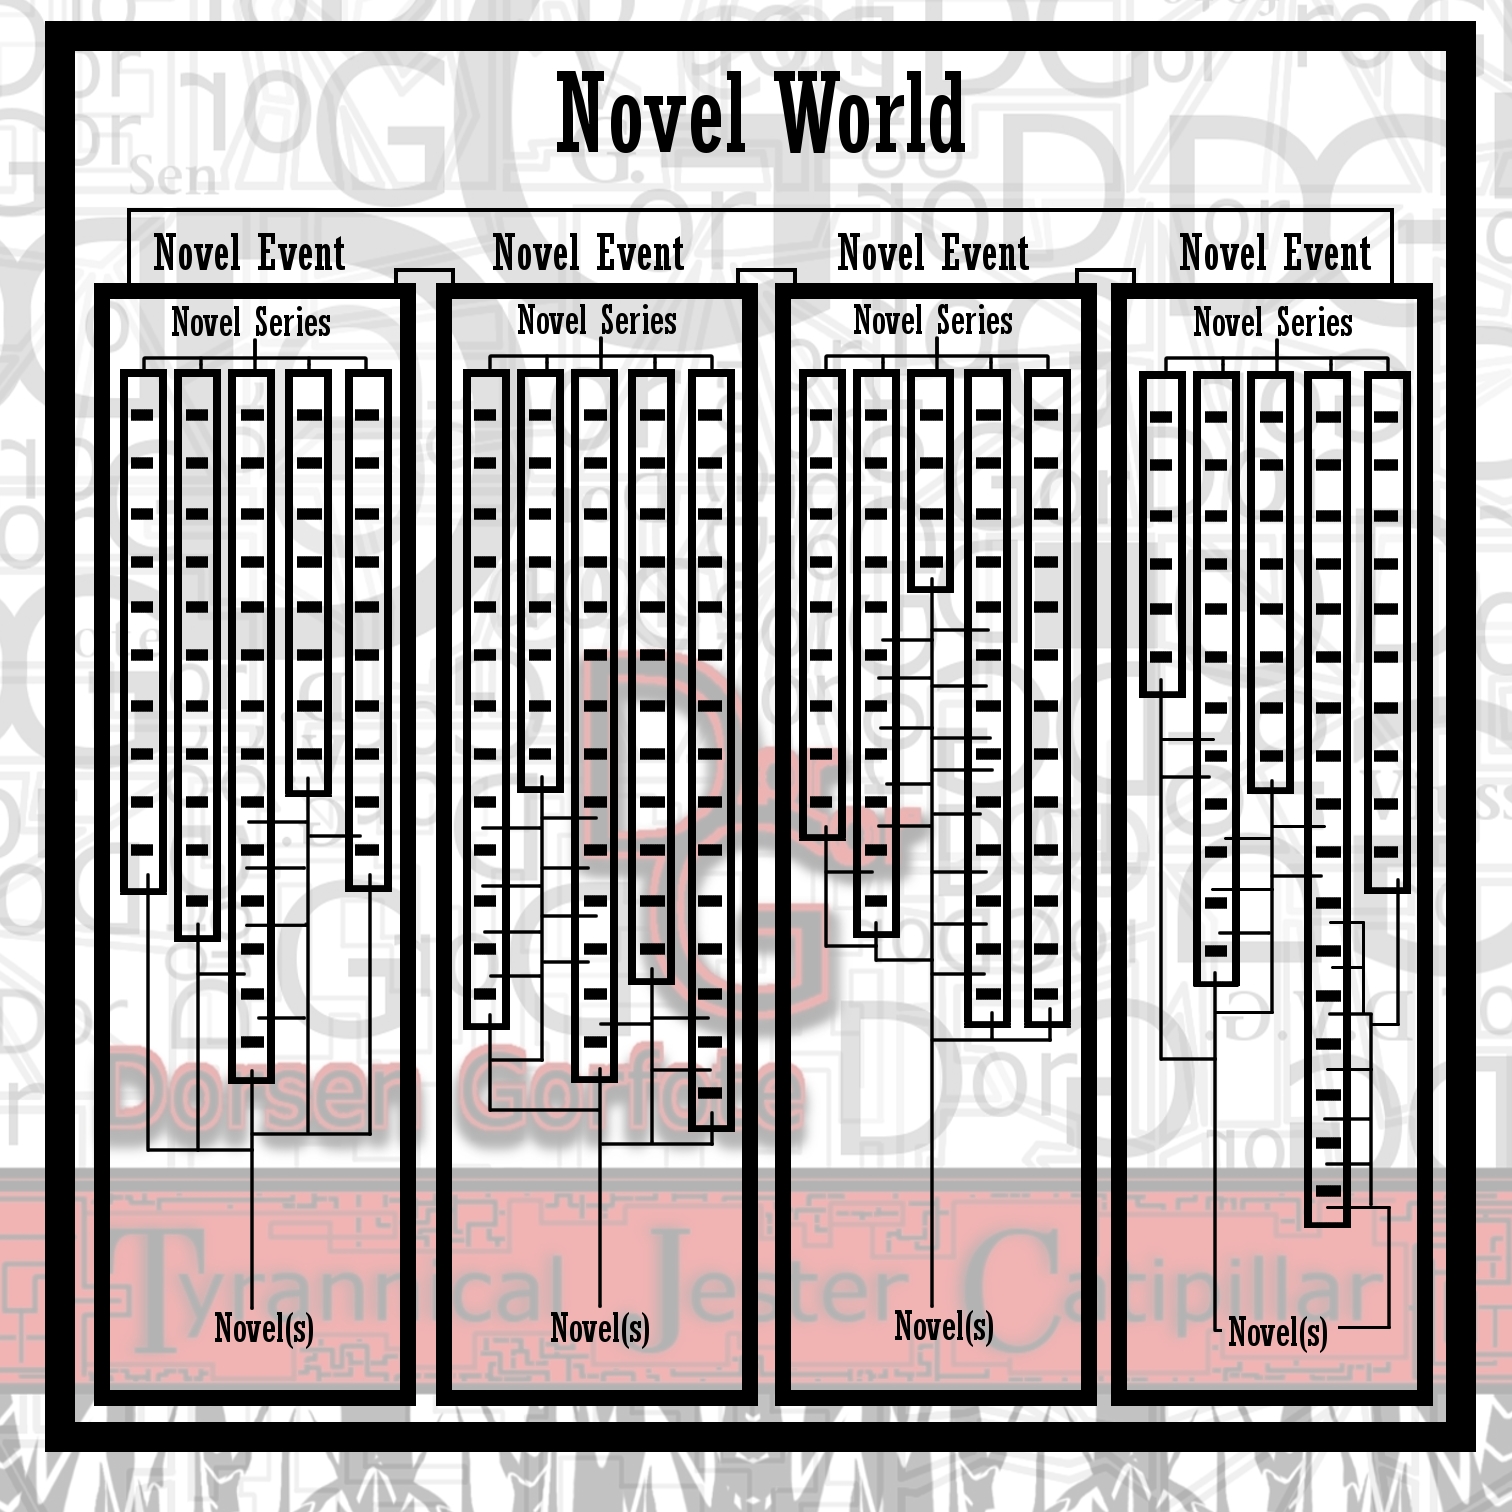 1-29-17 understanding the novel world(06).jpg